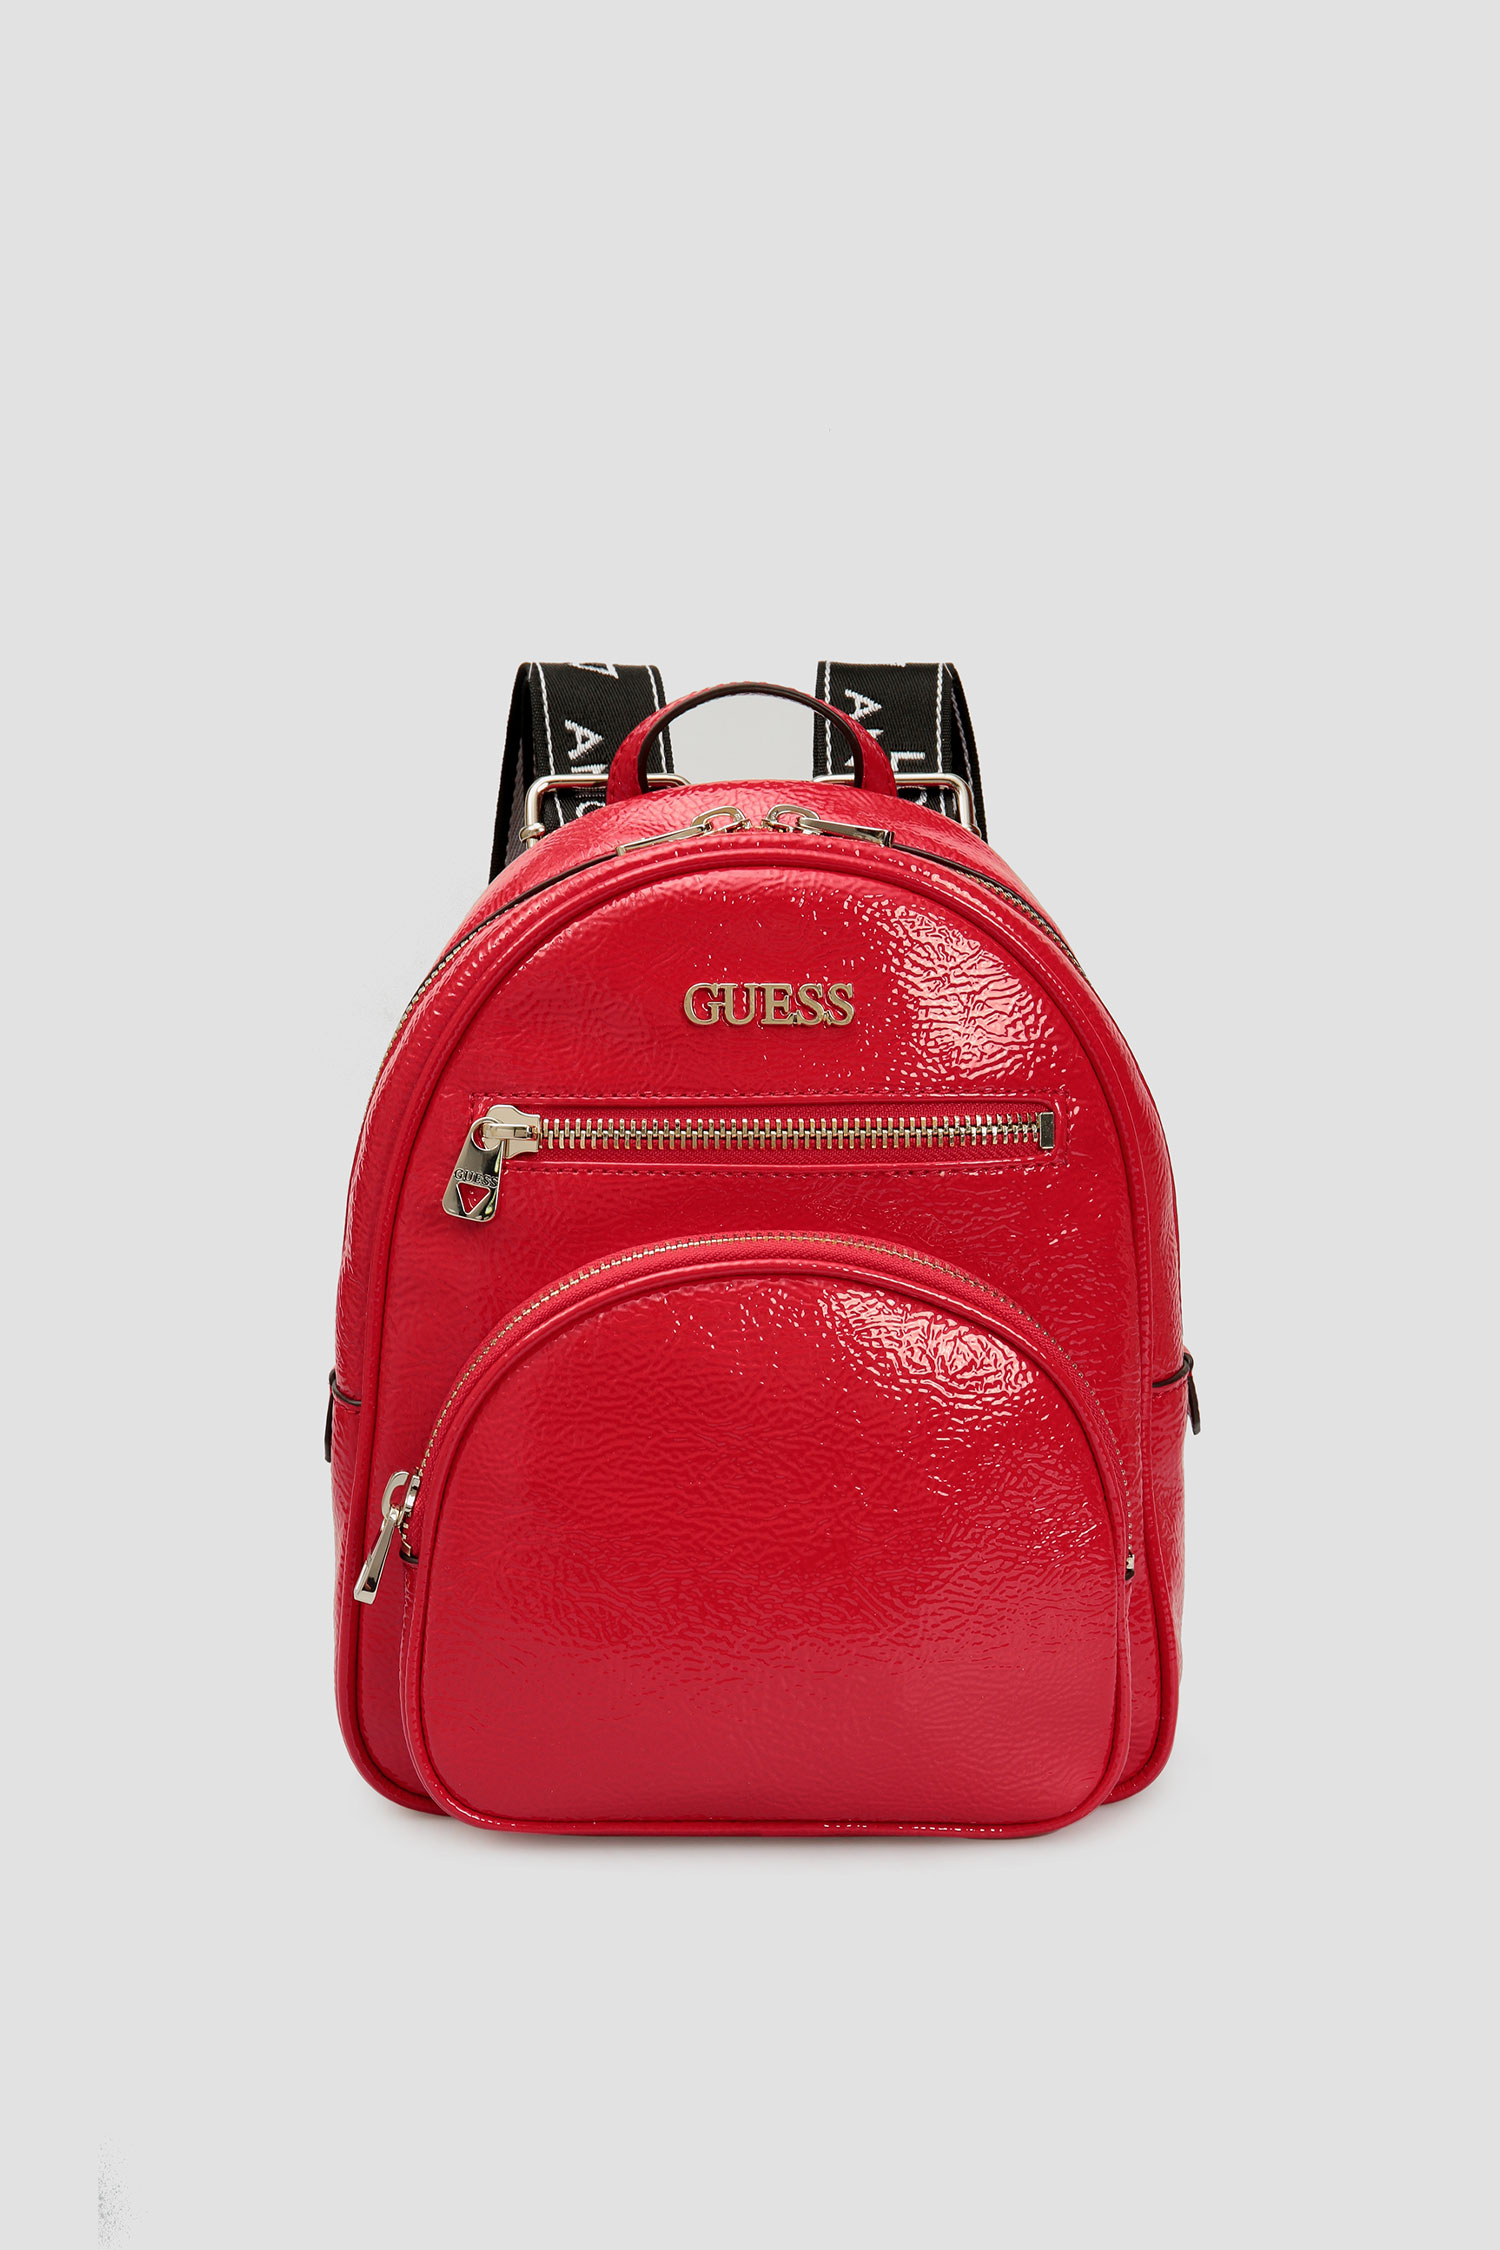 Червоний рюкзак для дівчат Guess HWPG77.50320;RED